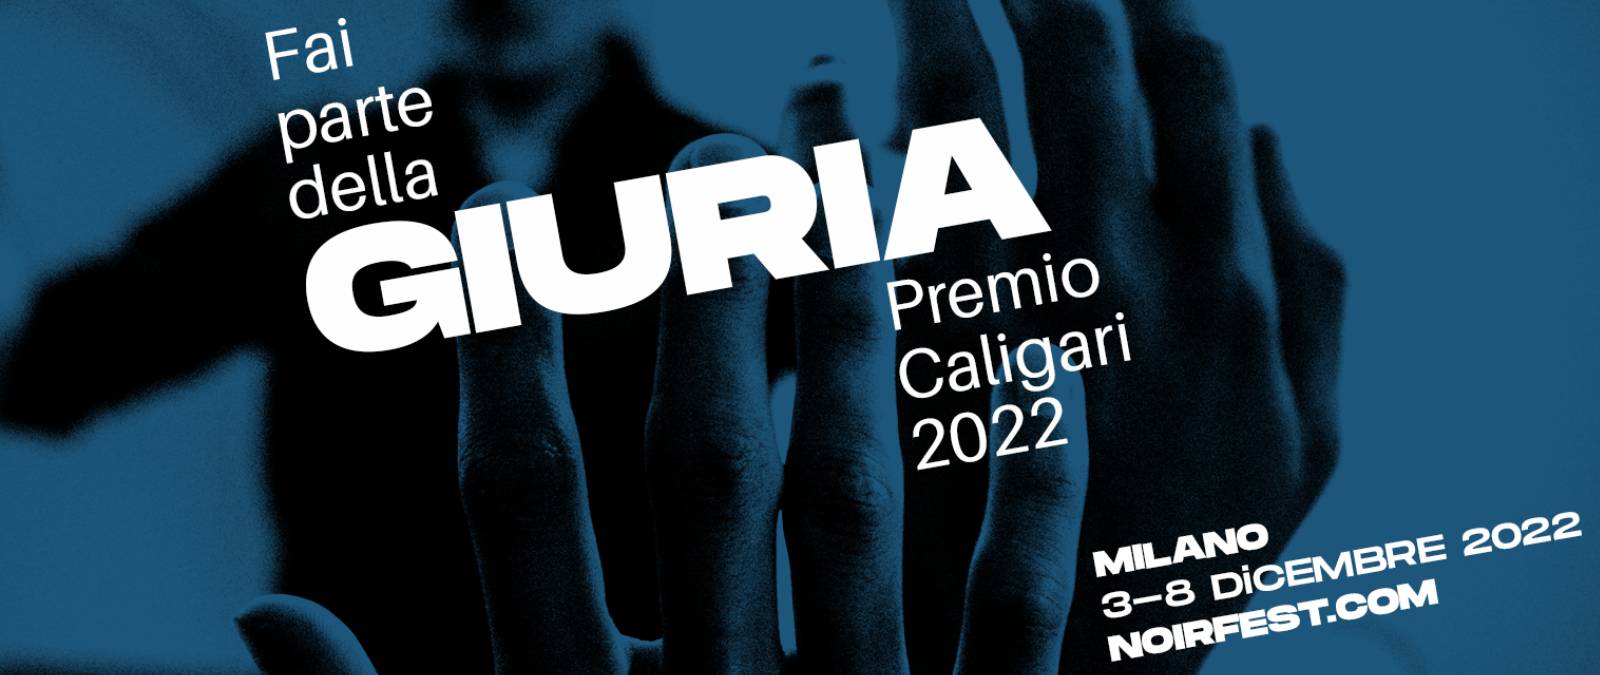 Caligari Prize 2022